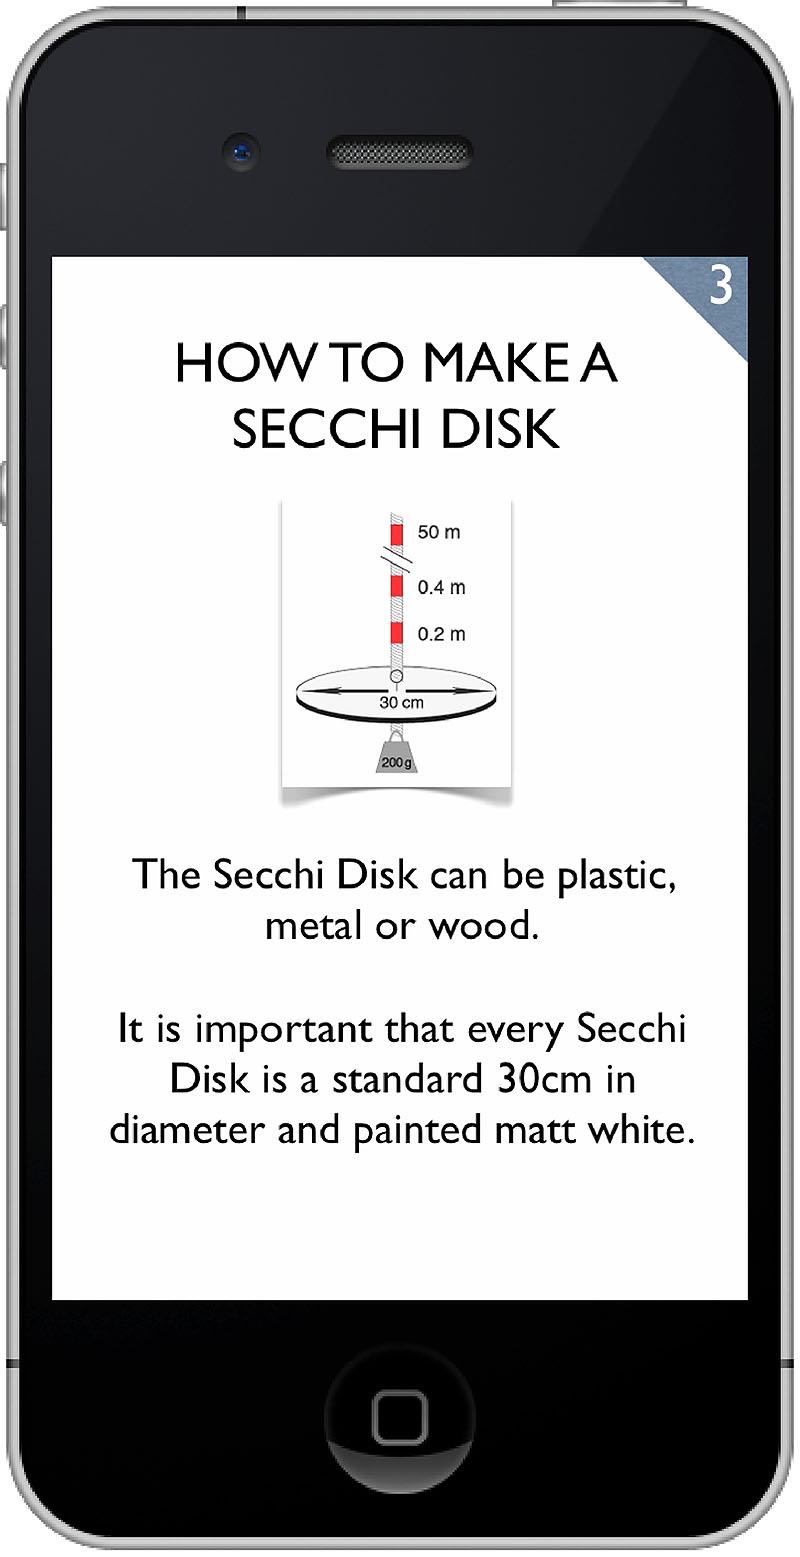 Construction page of the Secchi App - photo © Secchi Disk Study